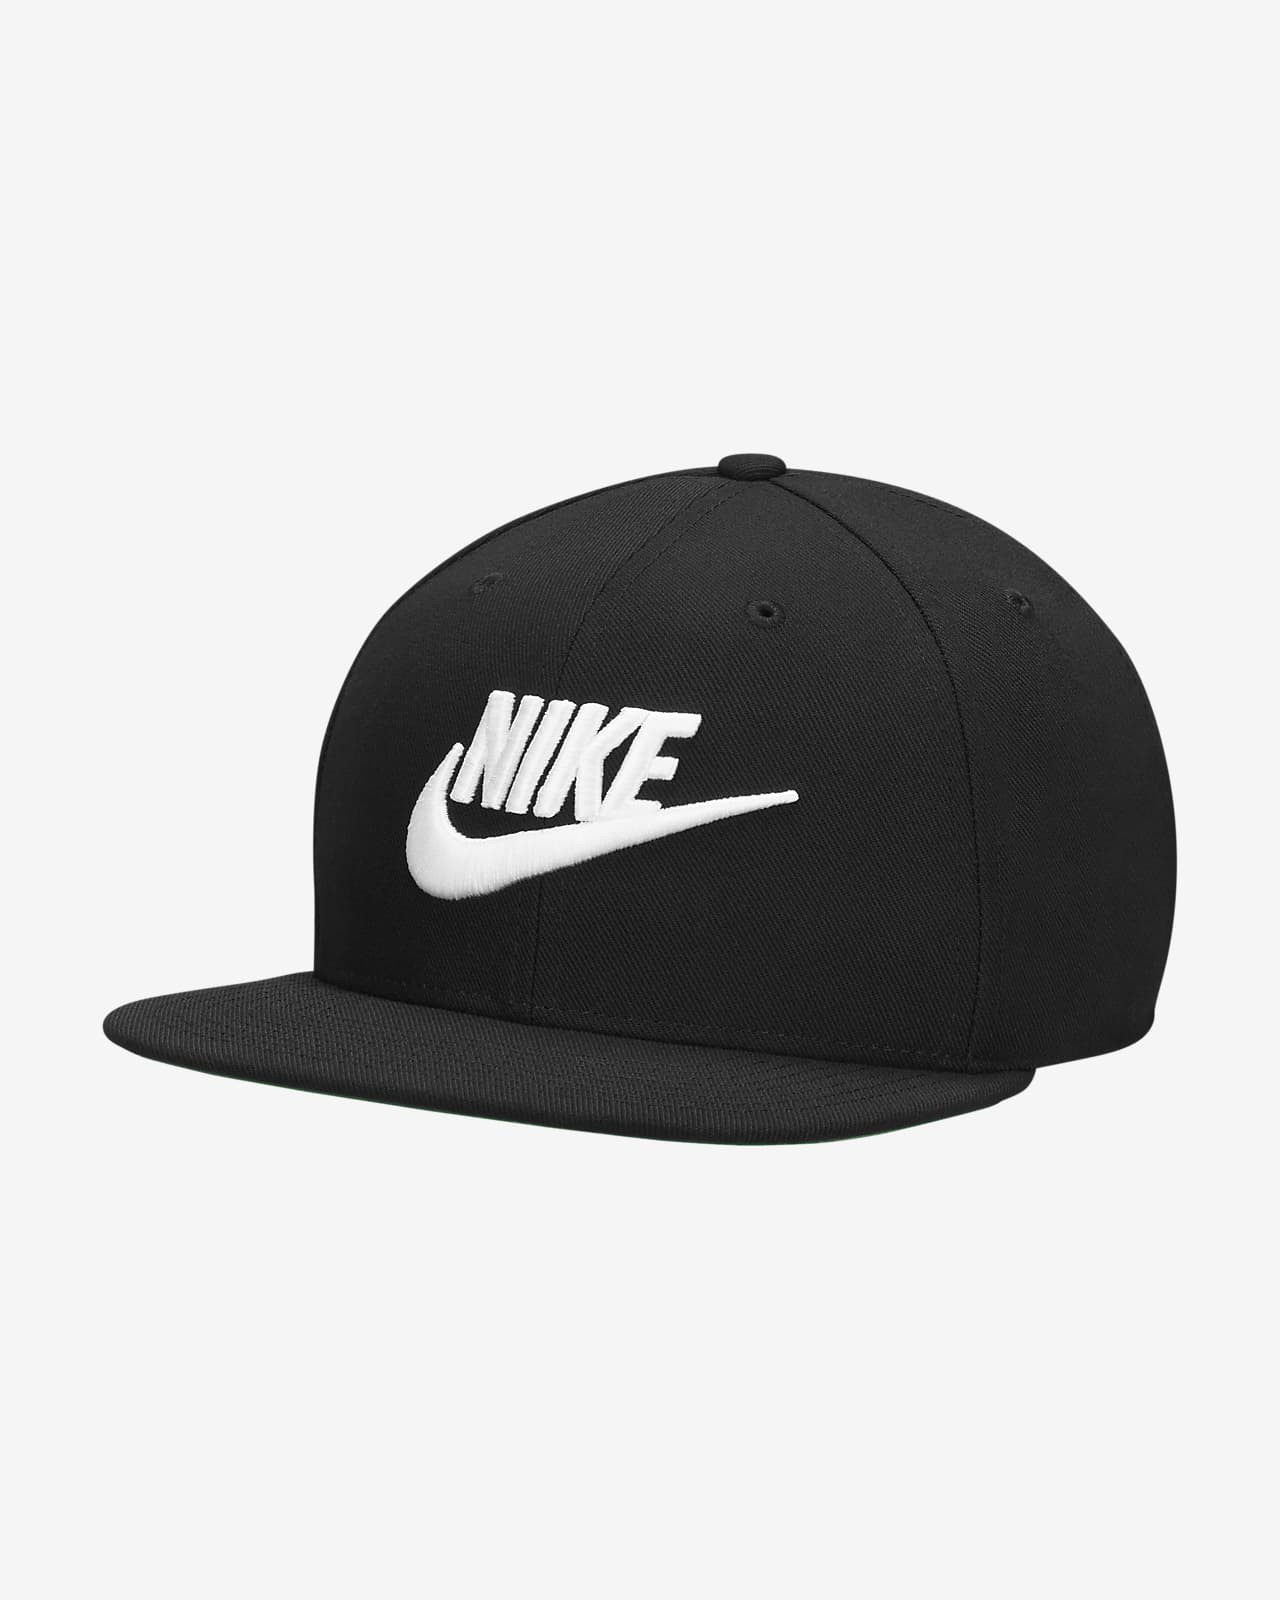 Pro Futura Adjustable Cap. Nike.com